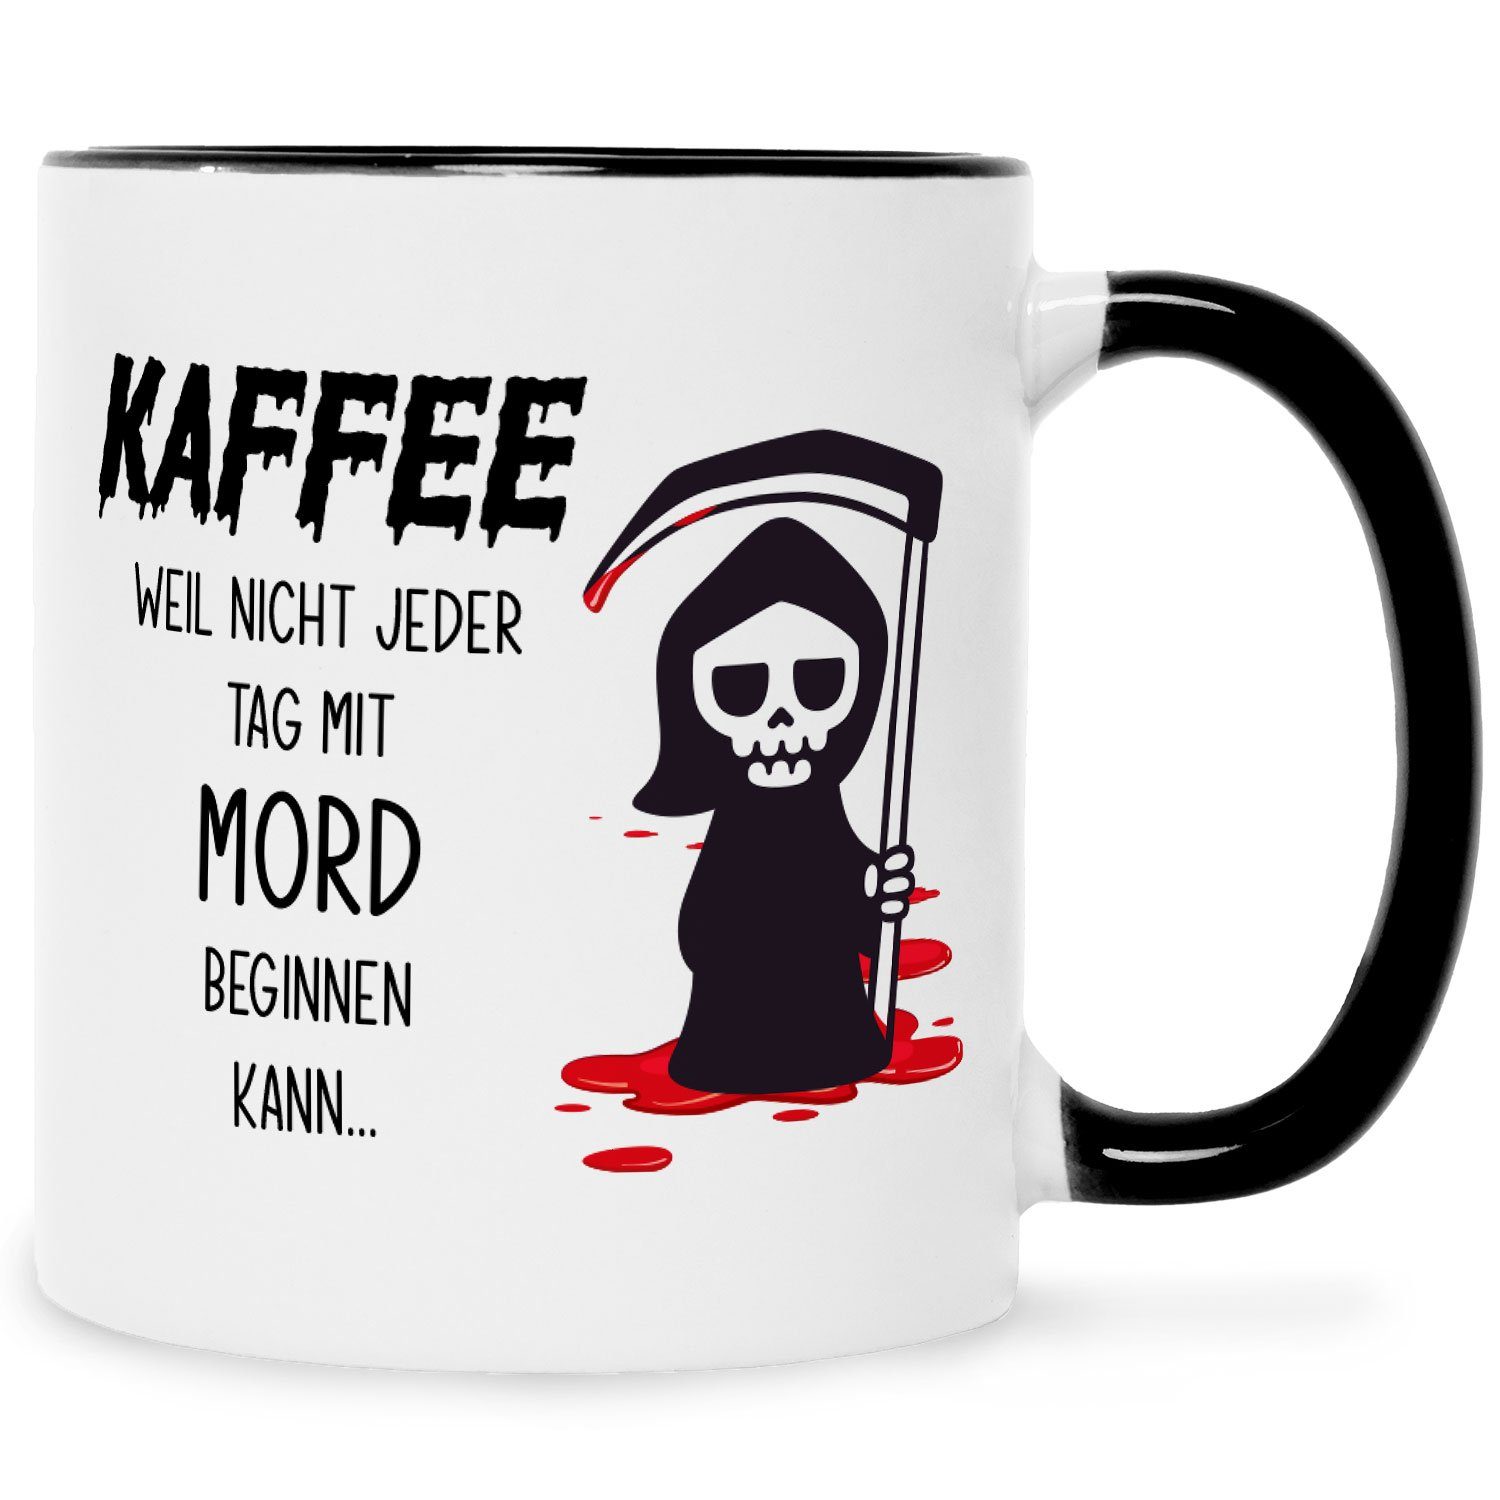 GRAVURZEILE Tasse mit Spruch Kaffee weil nicht jeder Tag mit Mord beginnen kann, Keramik, Farbe: Schwarz & Weiß